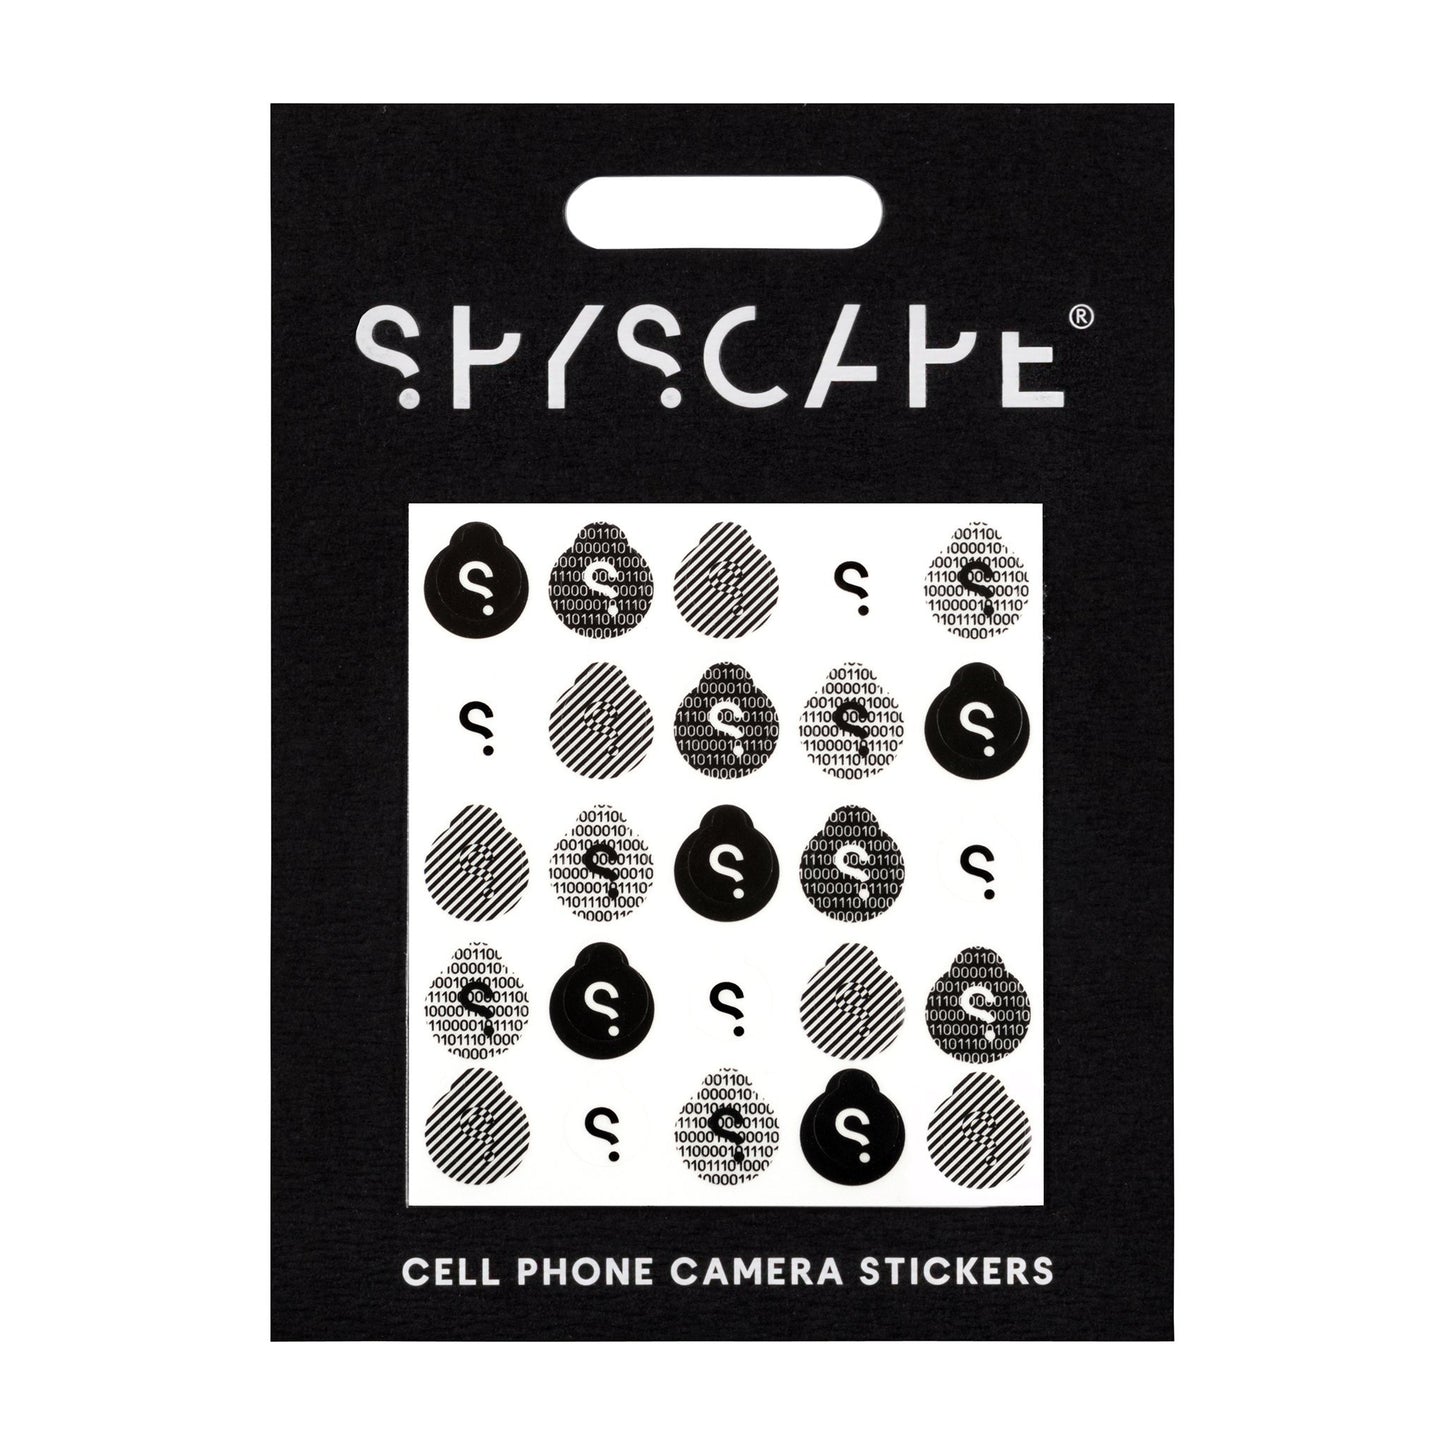 Alphabet Stickers, SPYSCAPE